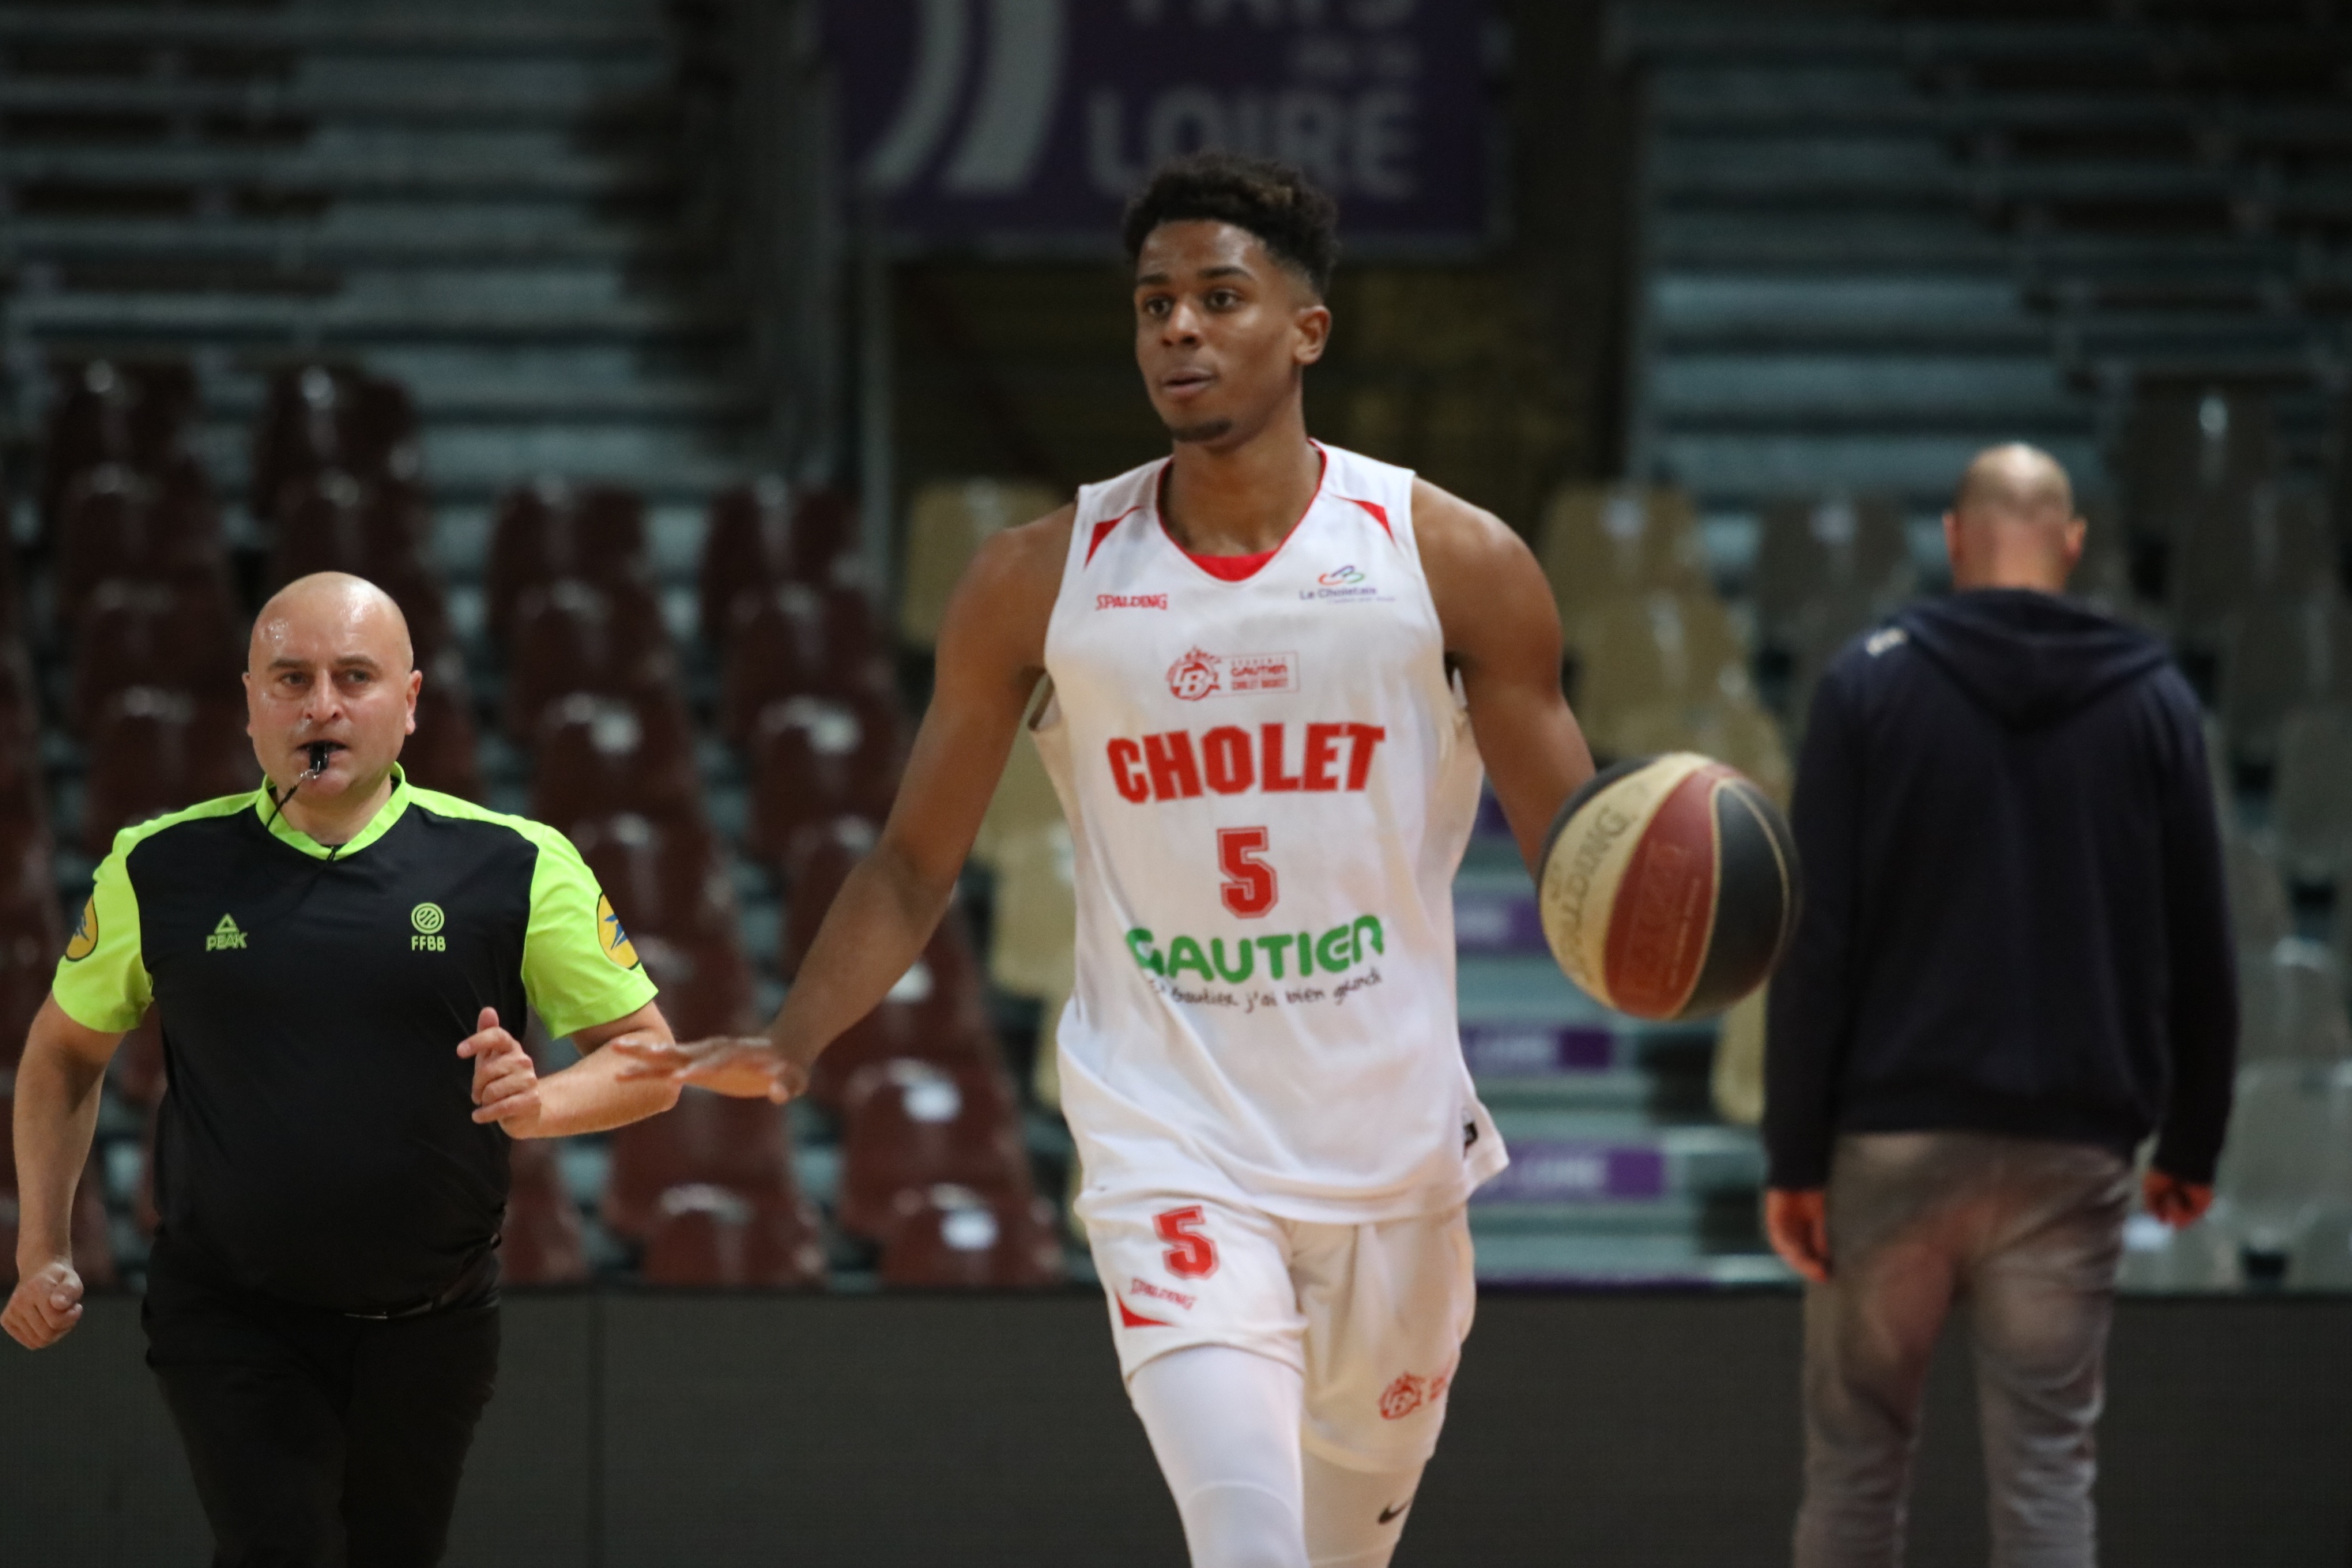 Académie Gautier Cholet Basket U21 - Châlons-Reims (06-04-19)